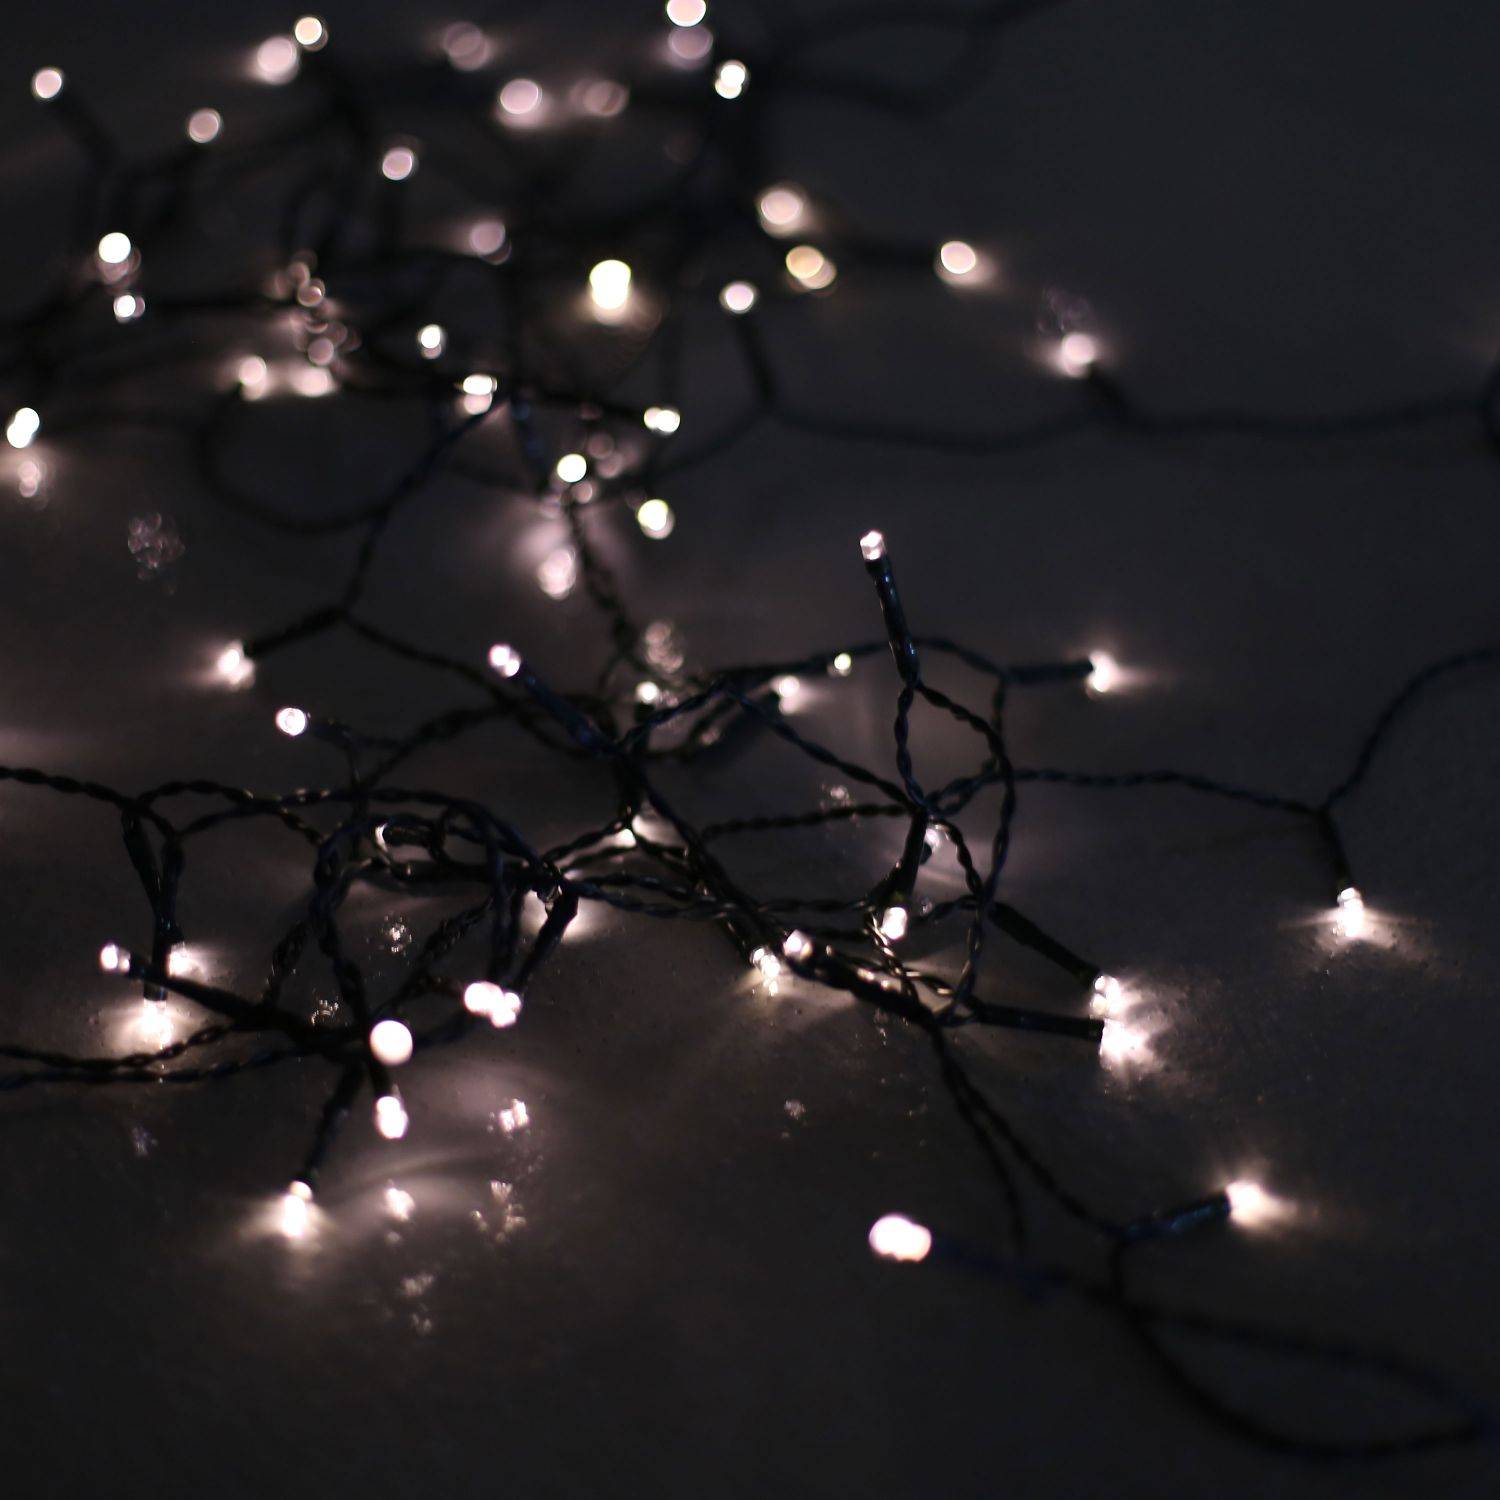 Guirlande lumineuse extérieure de Noël 18m de long, 180 LED blanc chaud, 8 modes Photo2